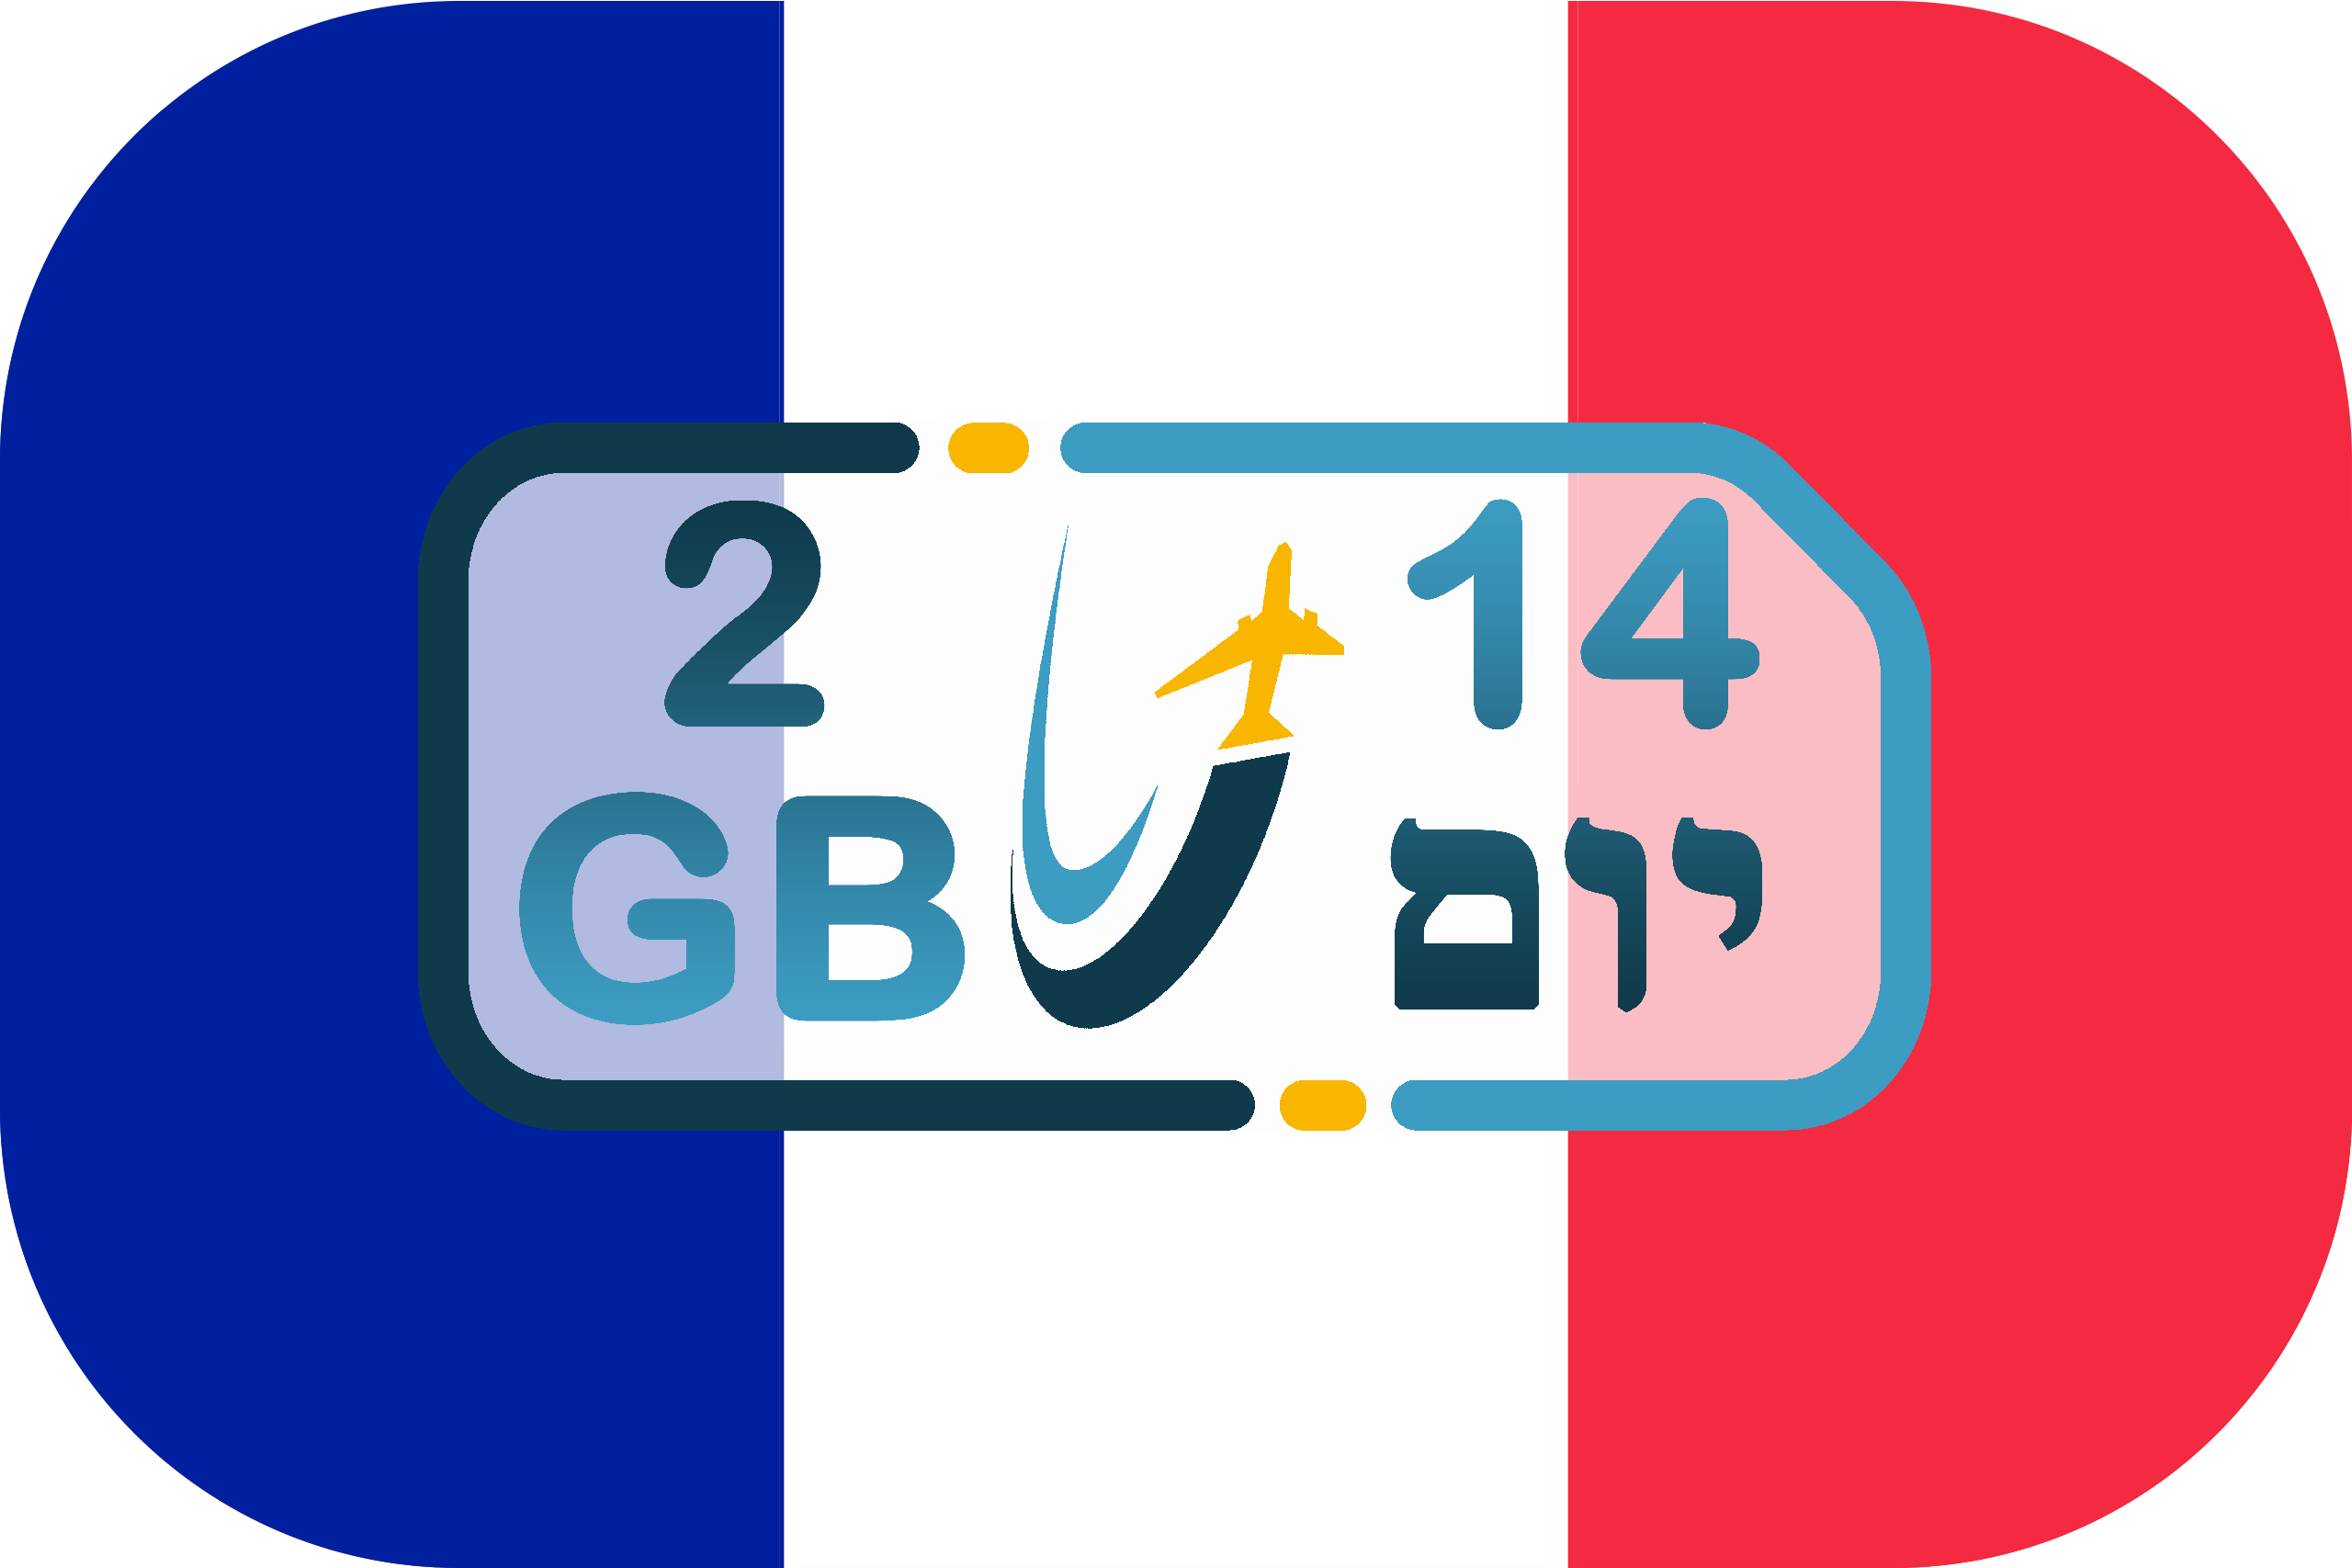 כרטיס סים בצרפת – גלישה 2GB (בתוקף ל- 14 יום)